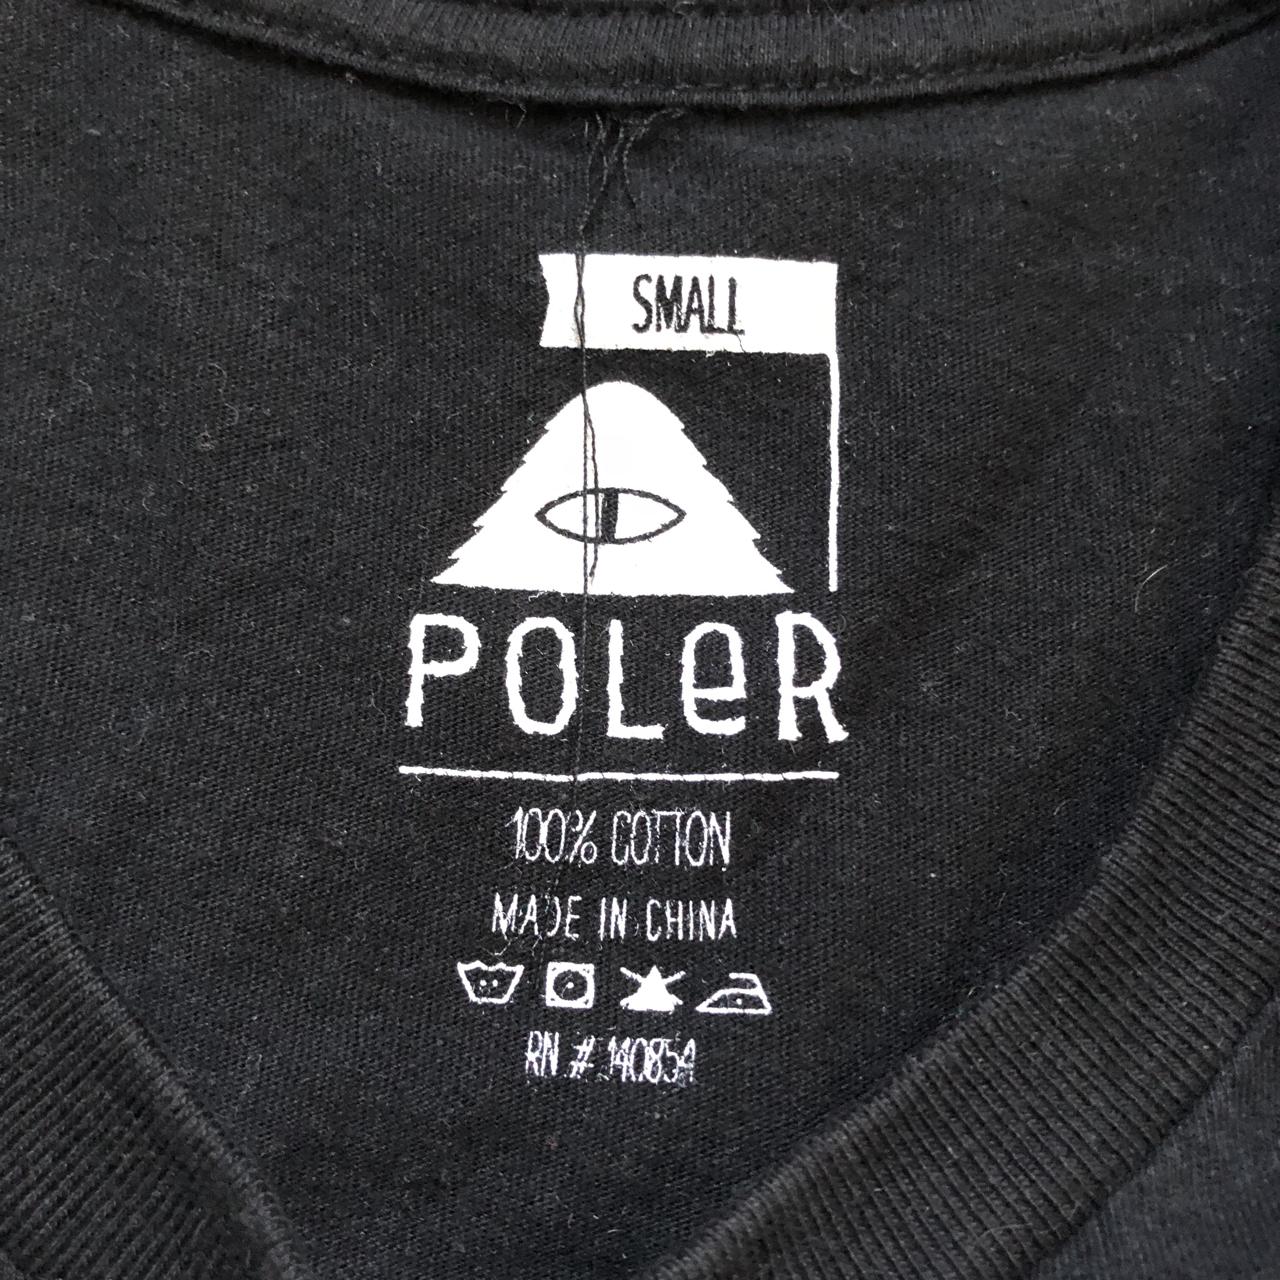 Poler Women's T-shirt (2)